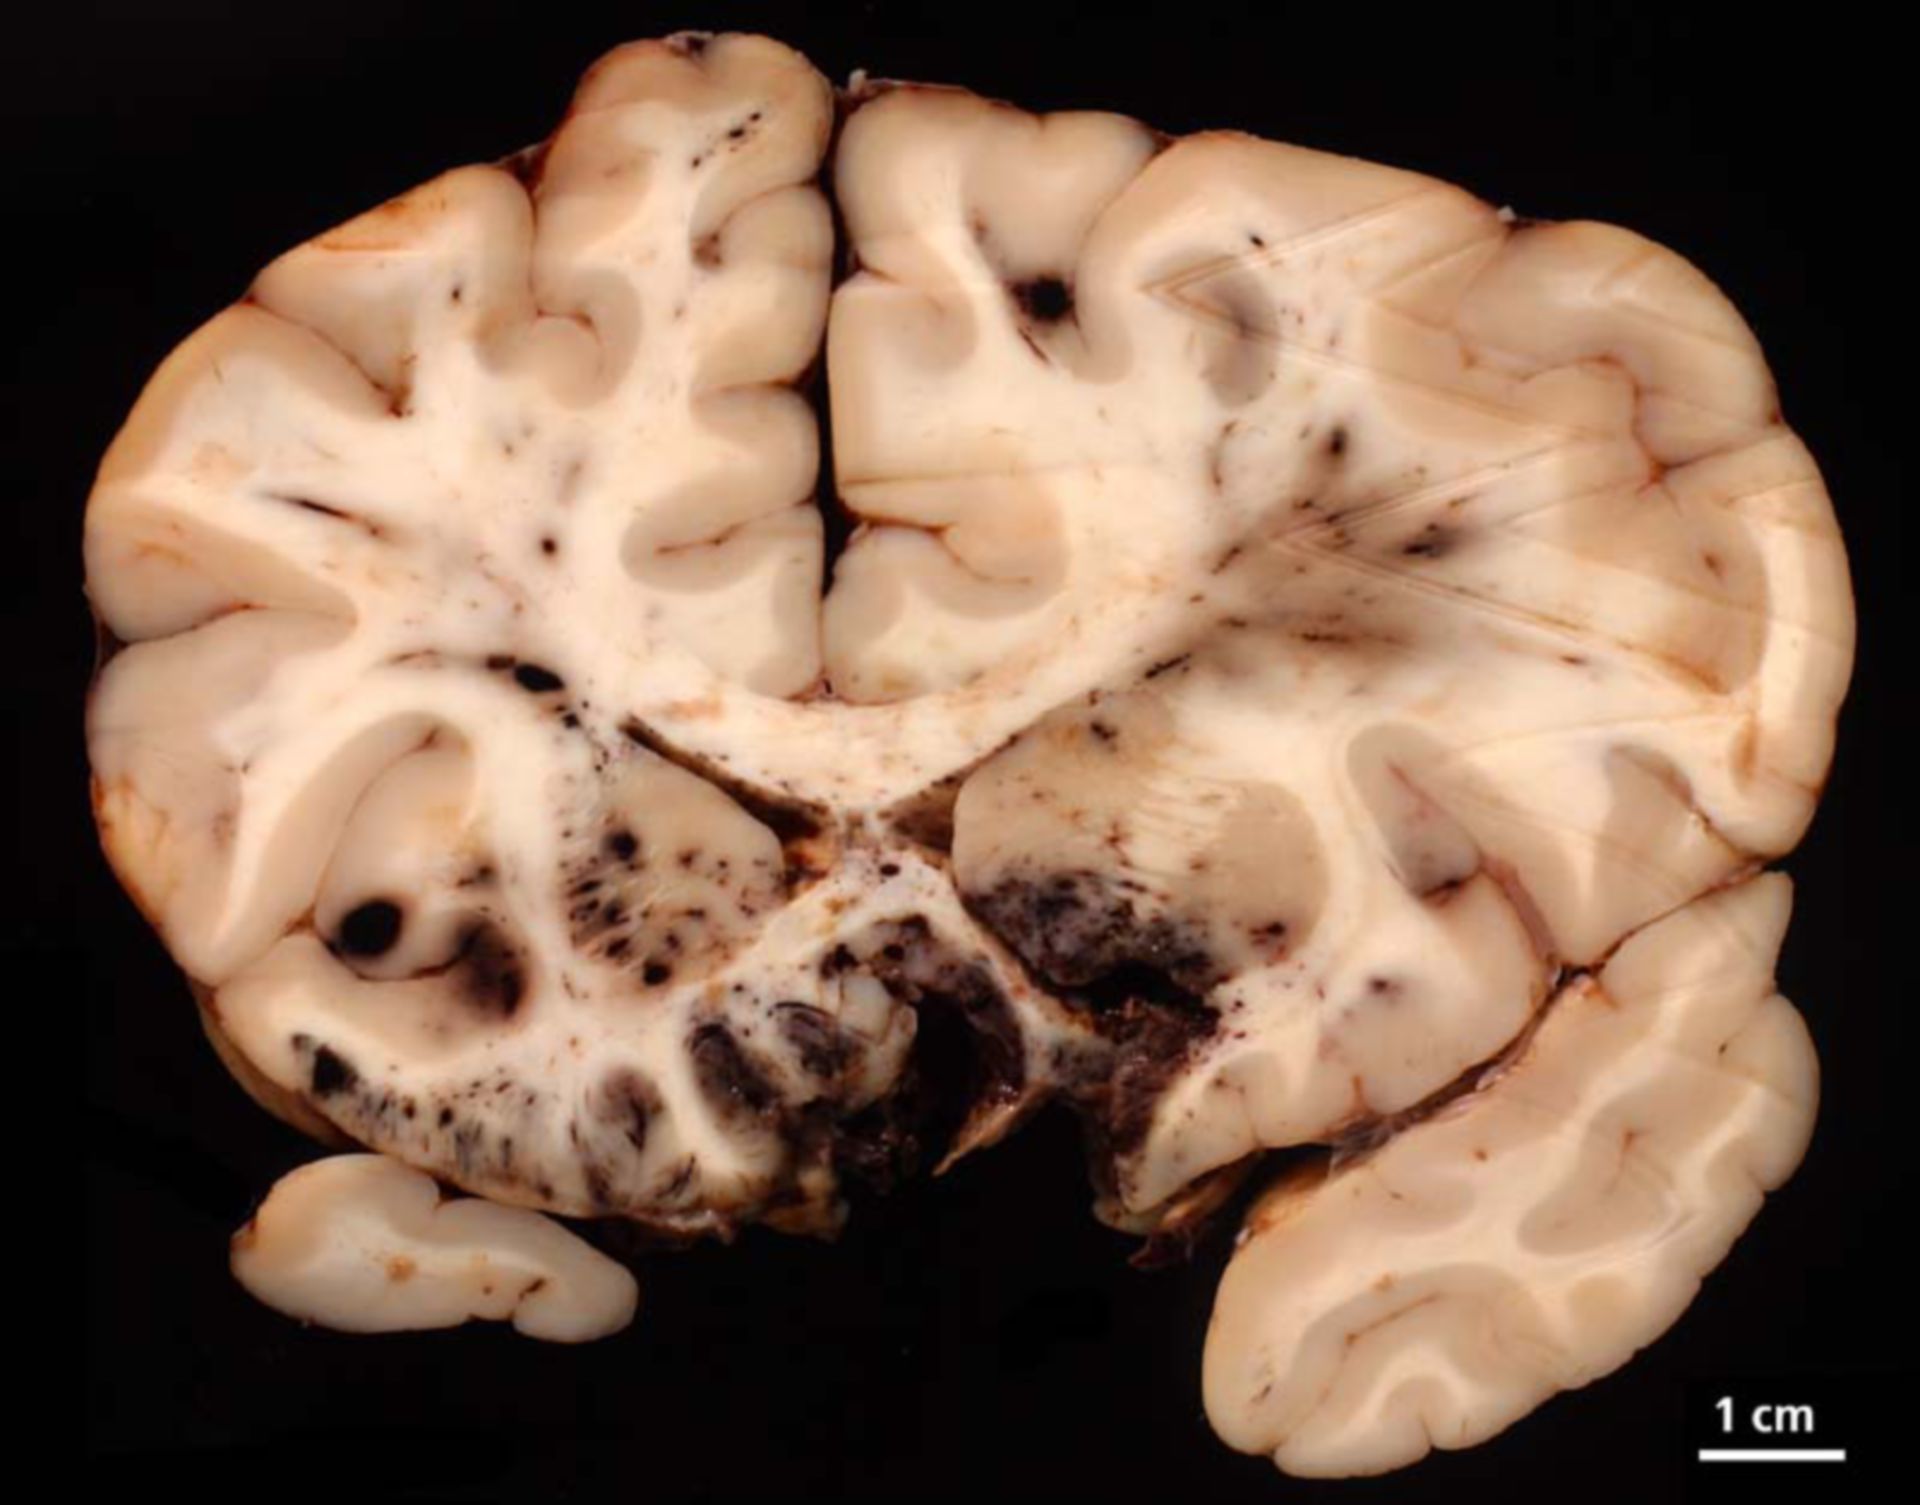 Lesioni cranio cerebrali con contusione emorragica